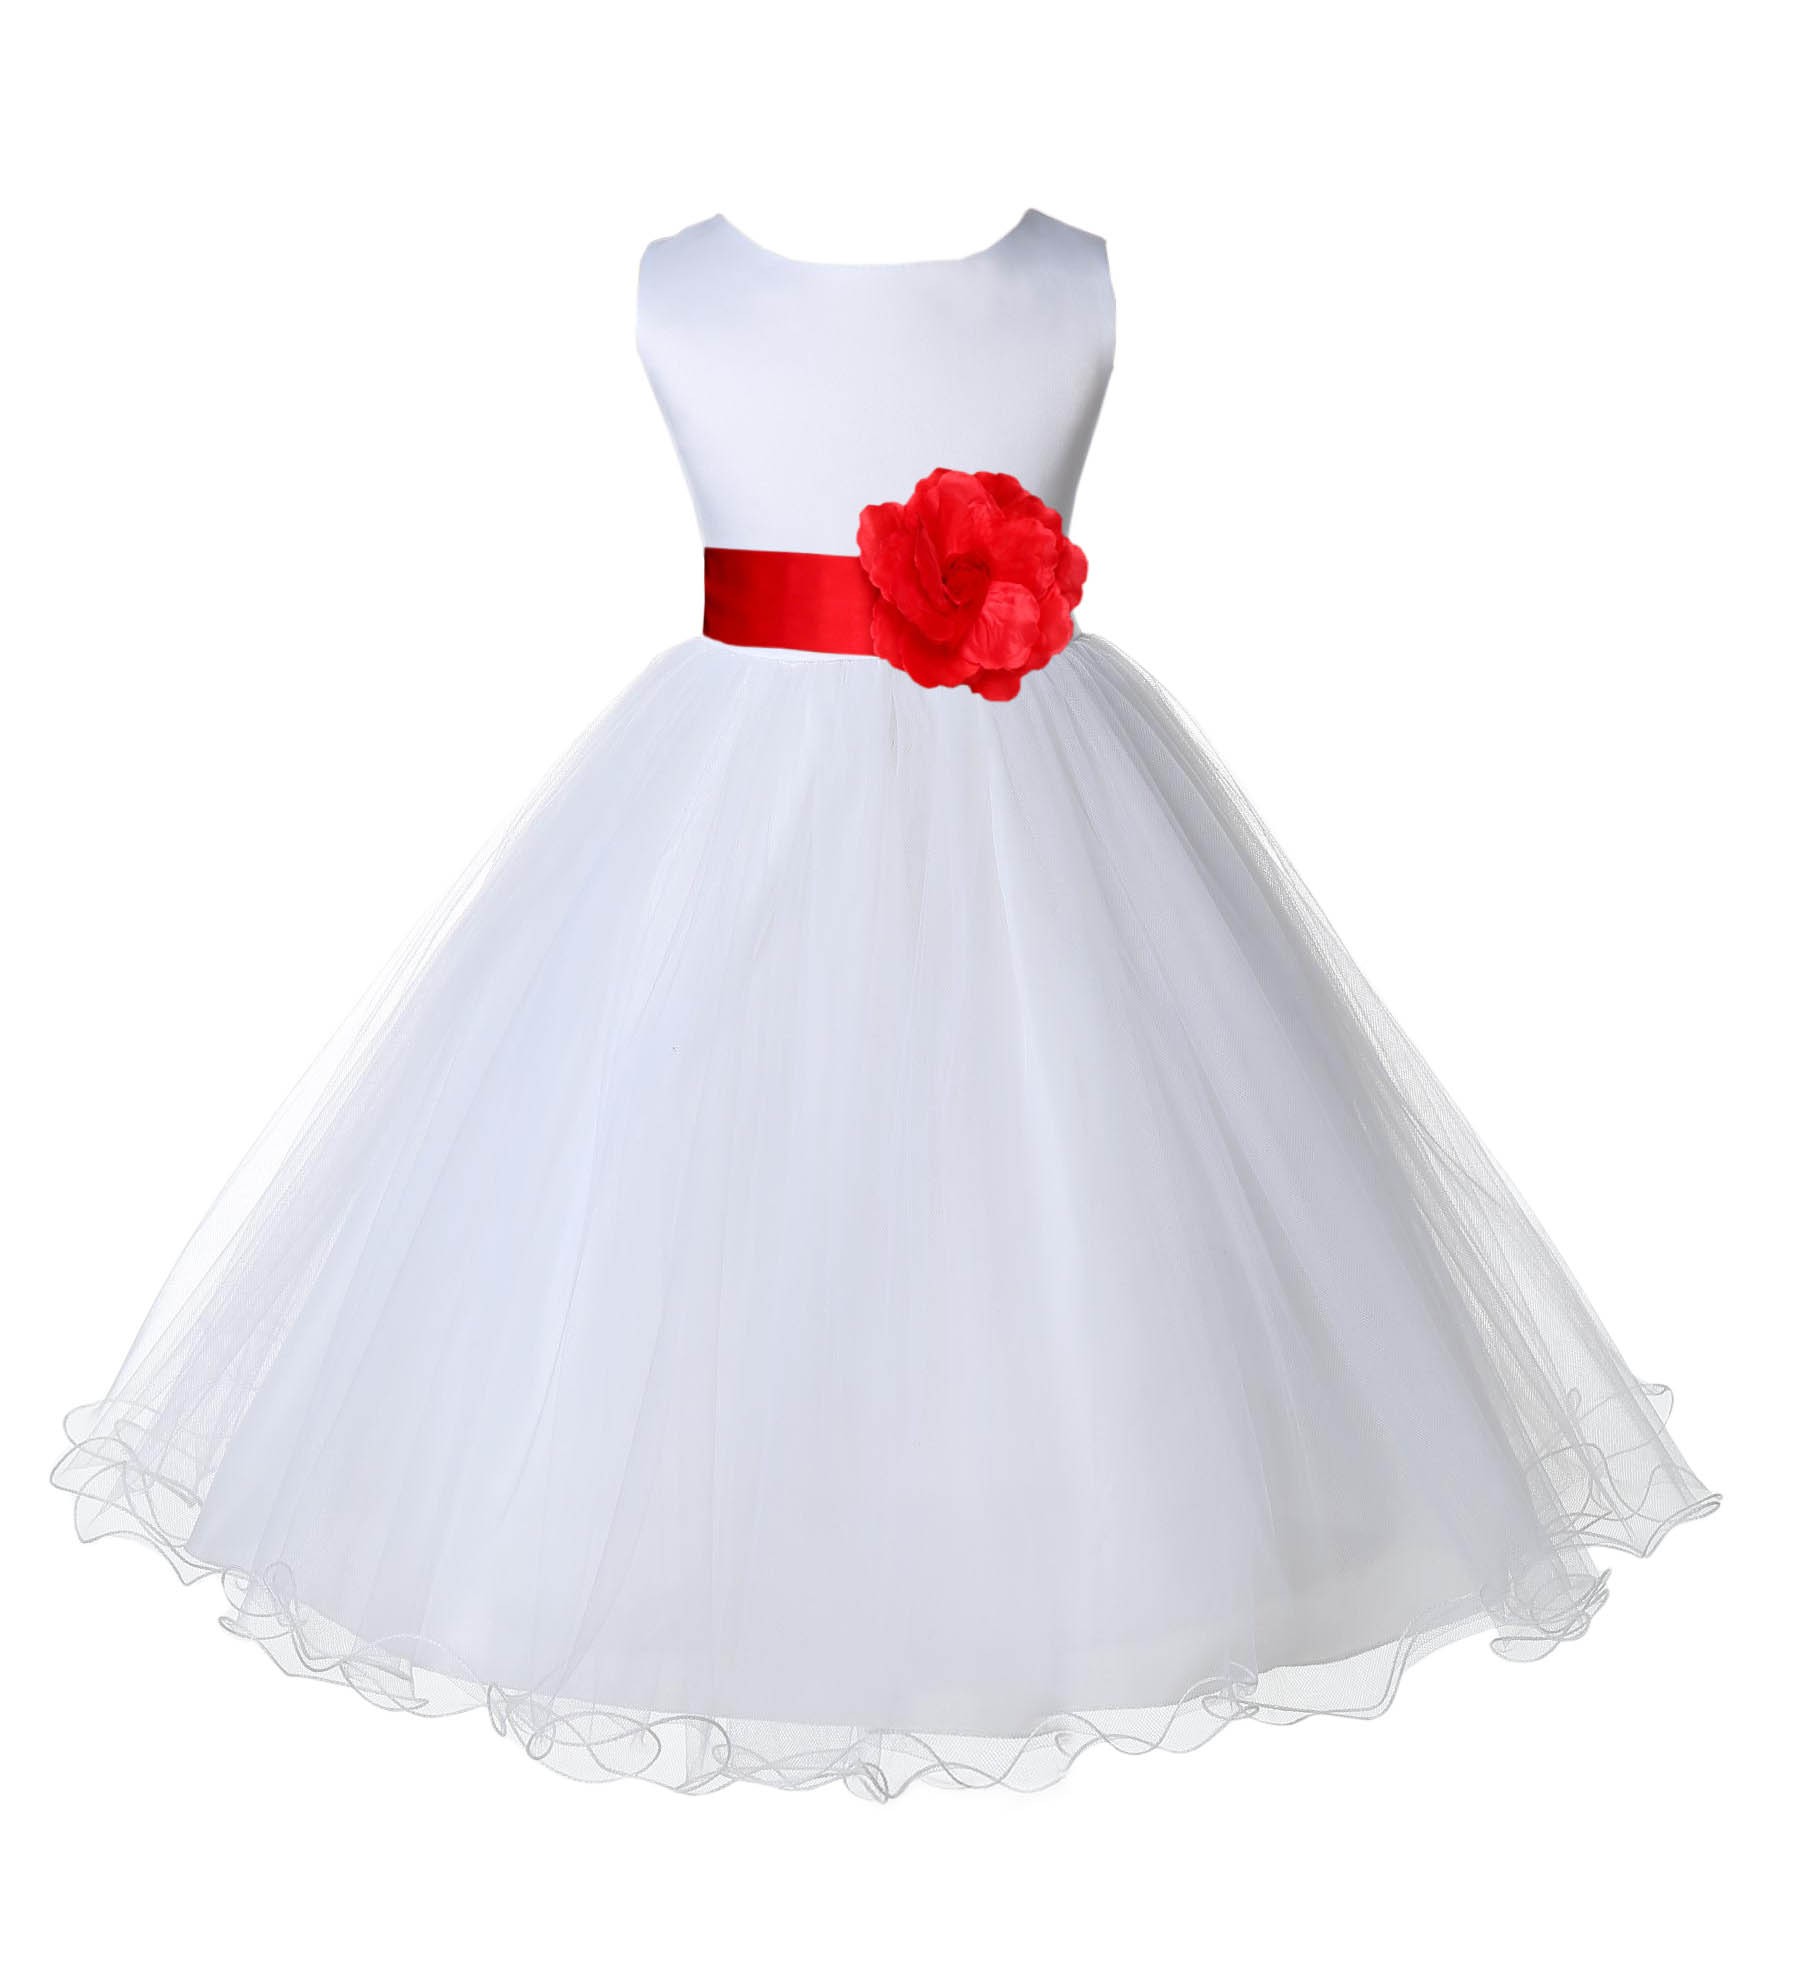 White/Red Tulle Rattail Edge Flower Girl Dress Wedding Bridal 829S